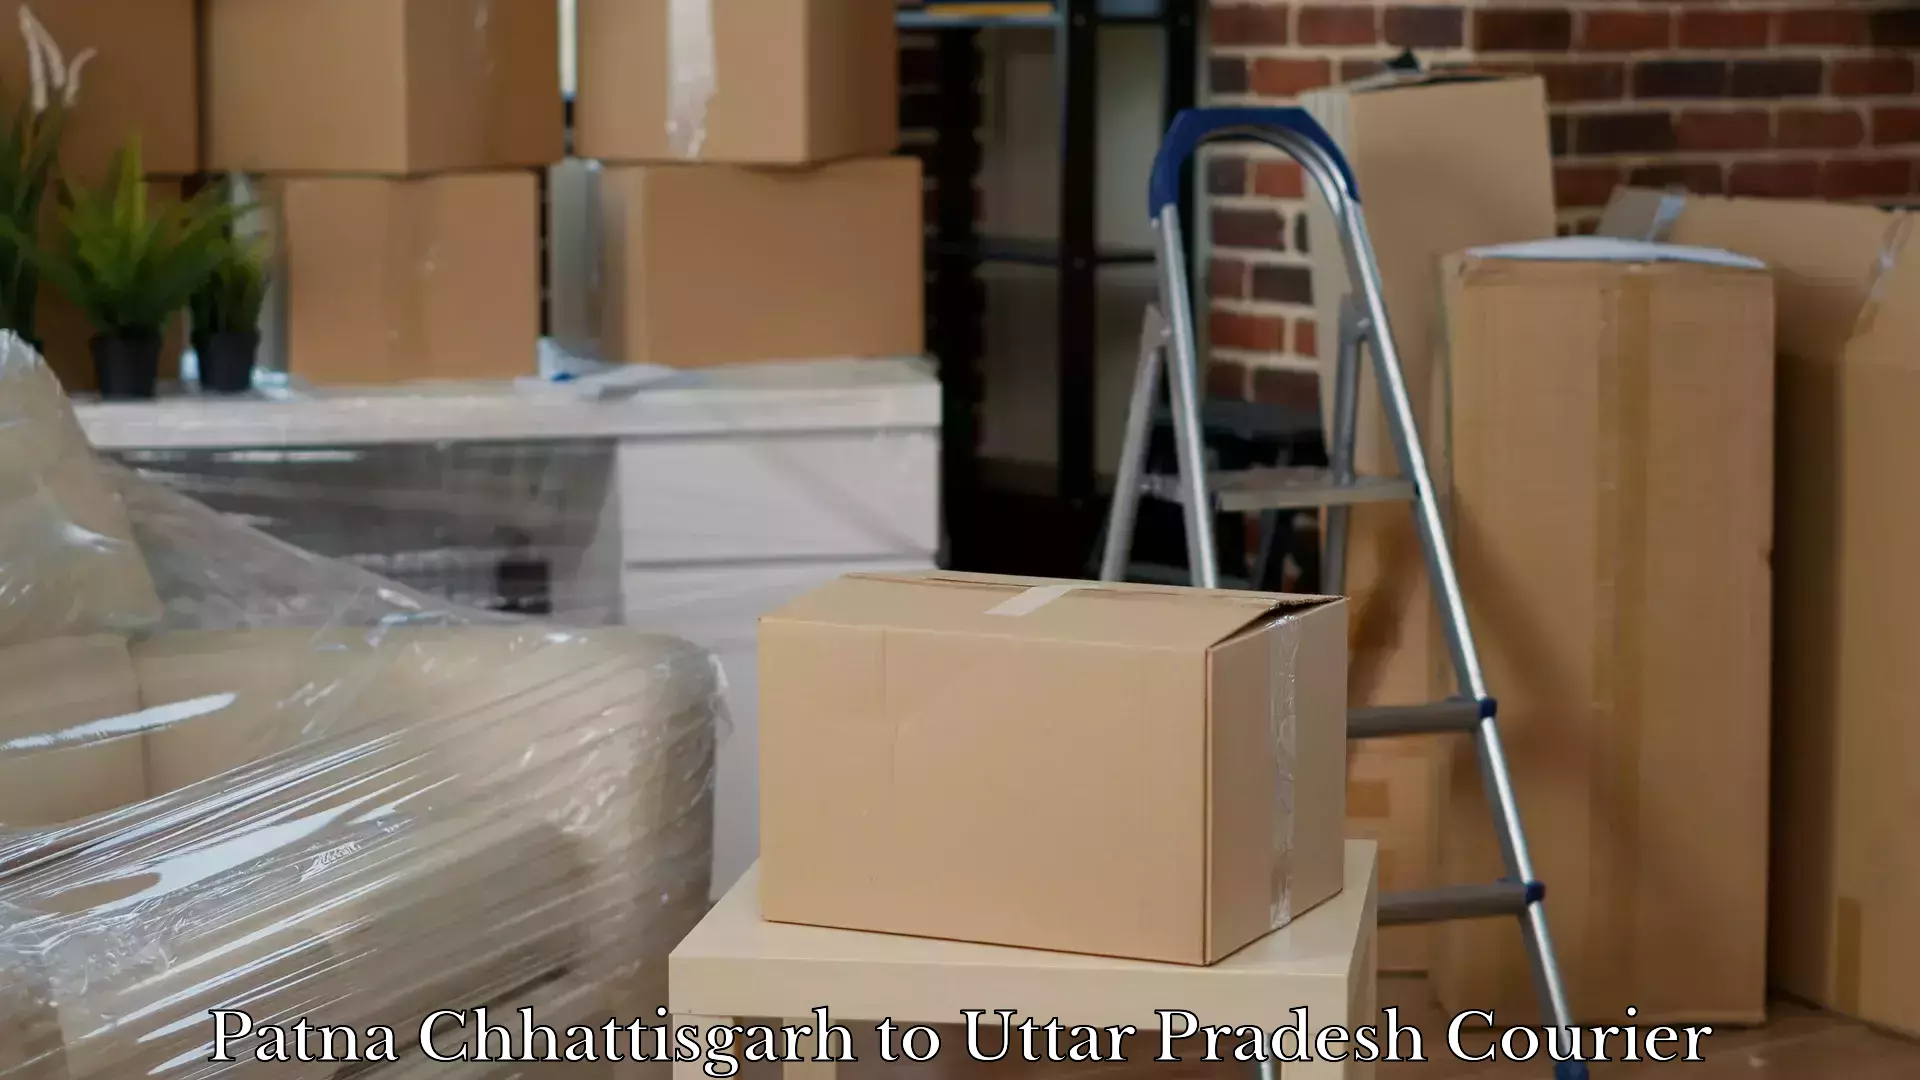 Baggage delivery technology Patna Chhattisgarh to Uttar Pradesh